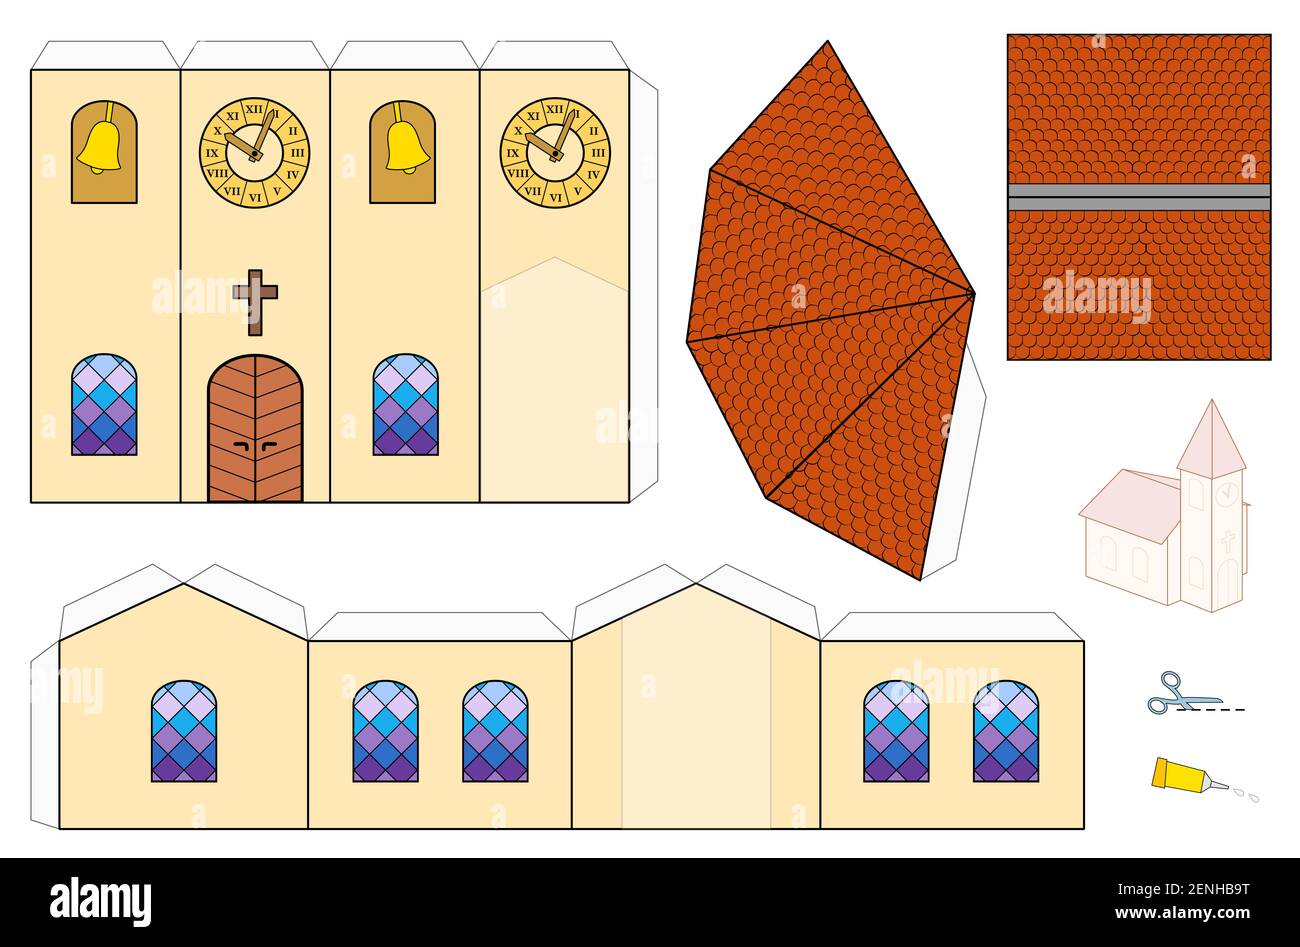 Plantilla de la iglesia, modelo de artesanía de papel. Hoja recortada para  hacer una iglesia modelo a escala 3d sencilla con ventanas coloridas,  campanario, reloj de torre y culebrilla Fotografía de stock -